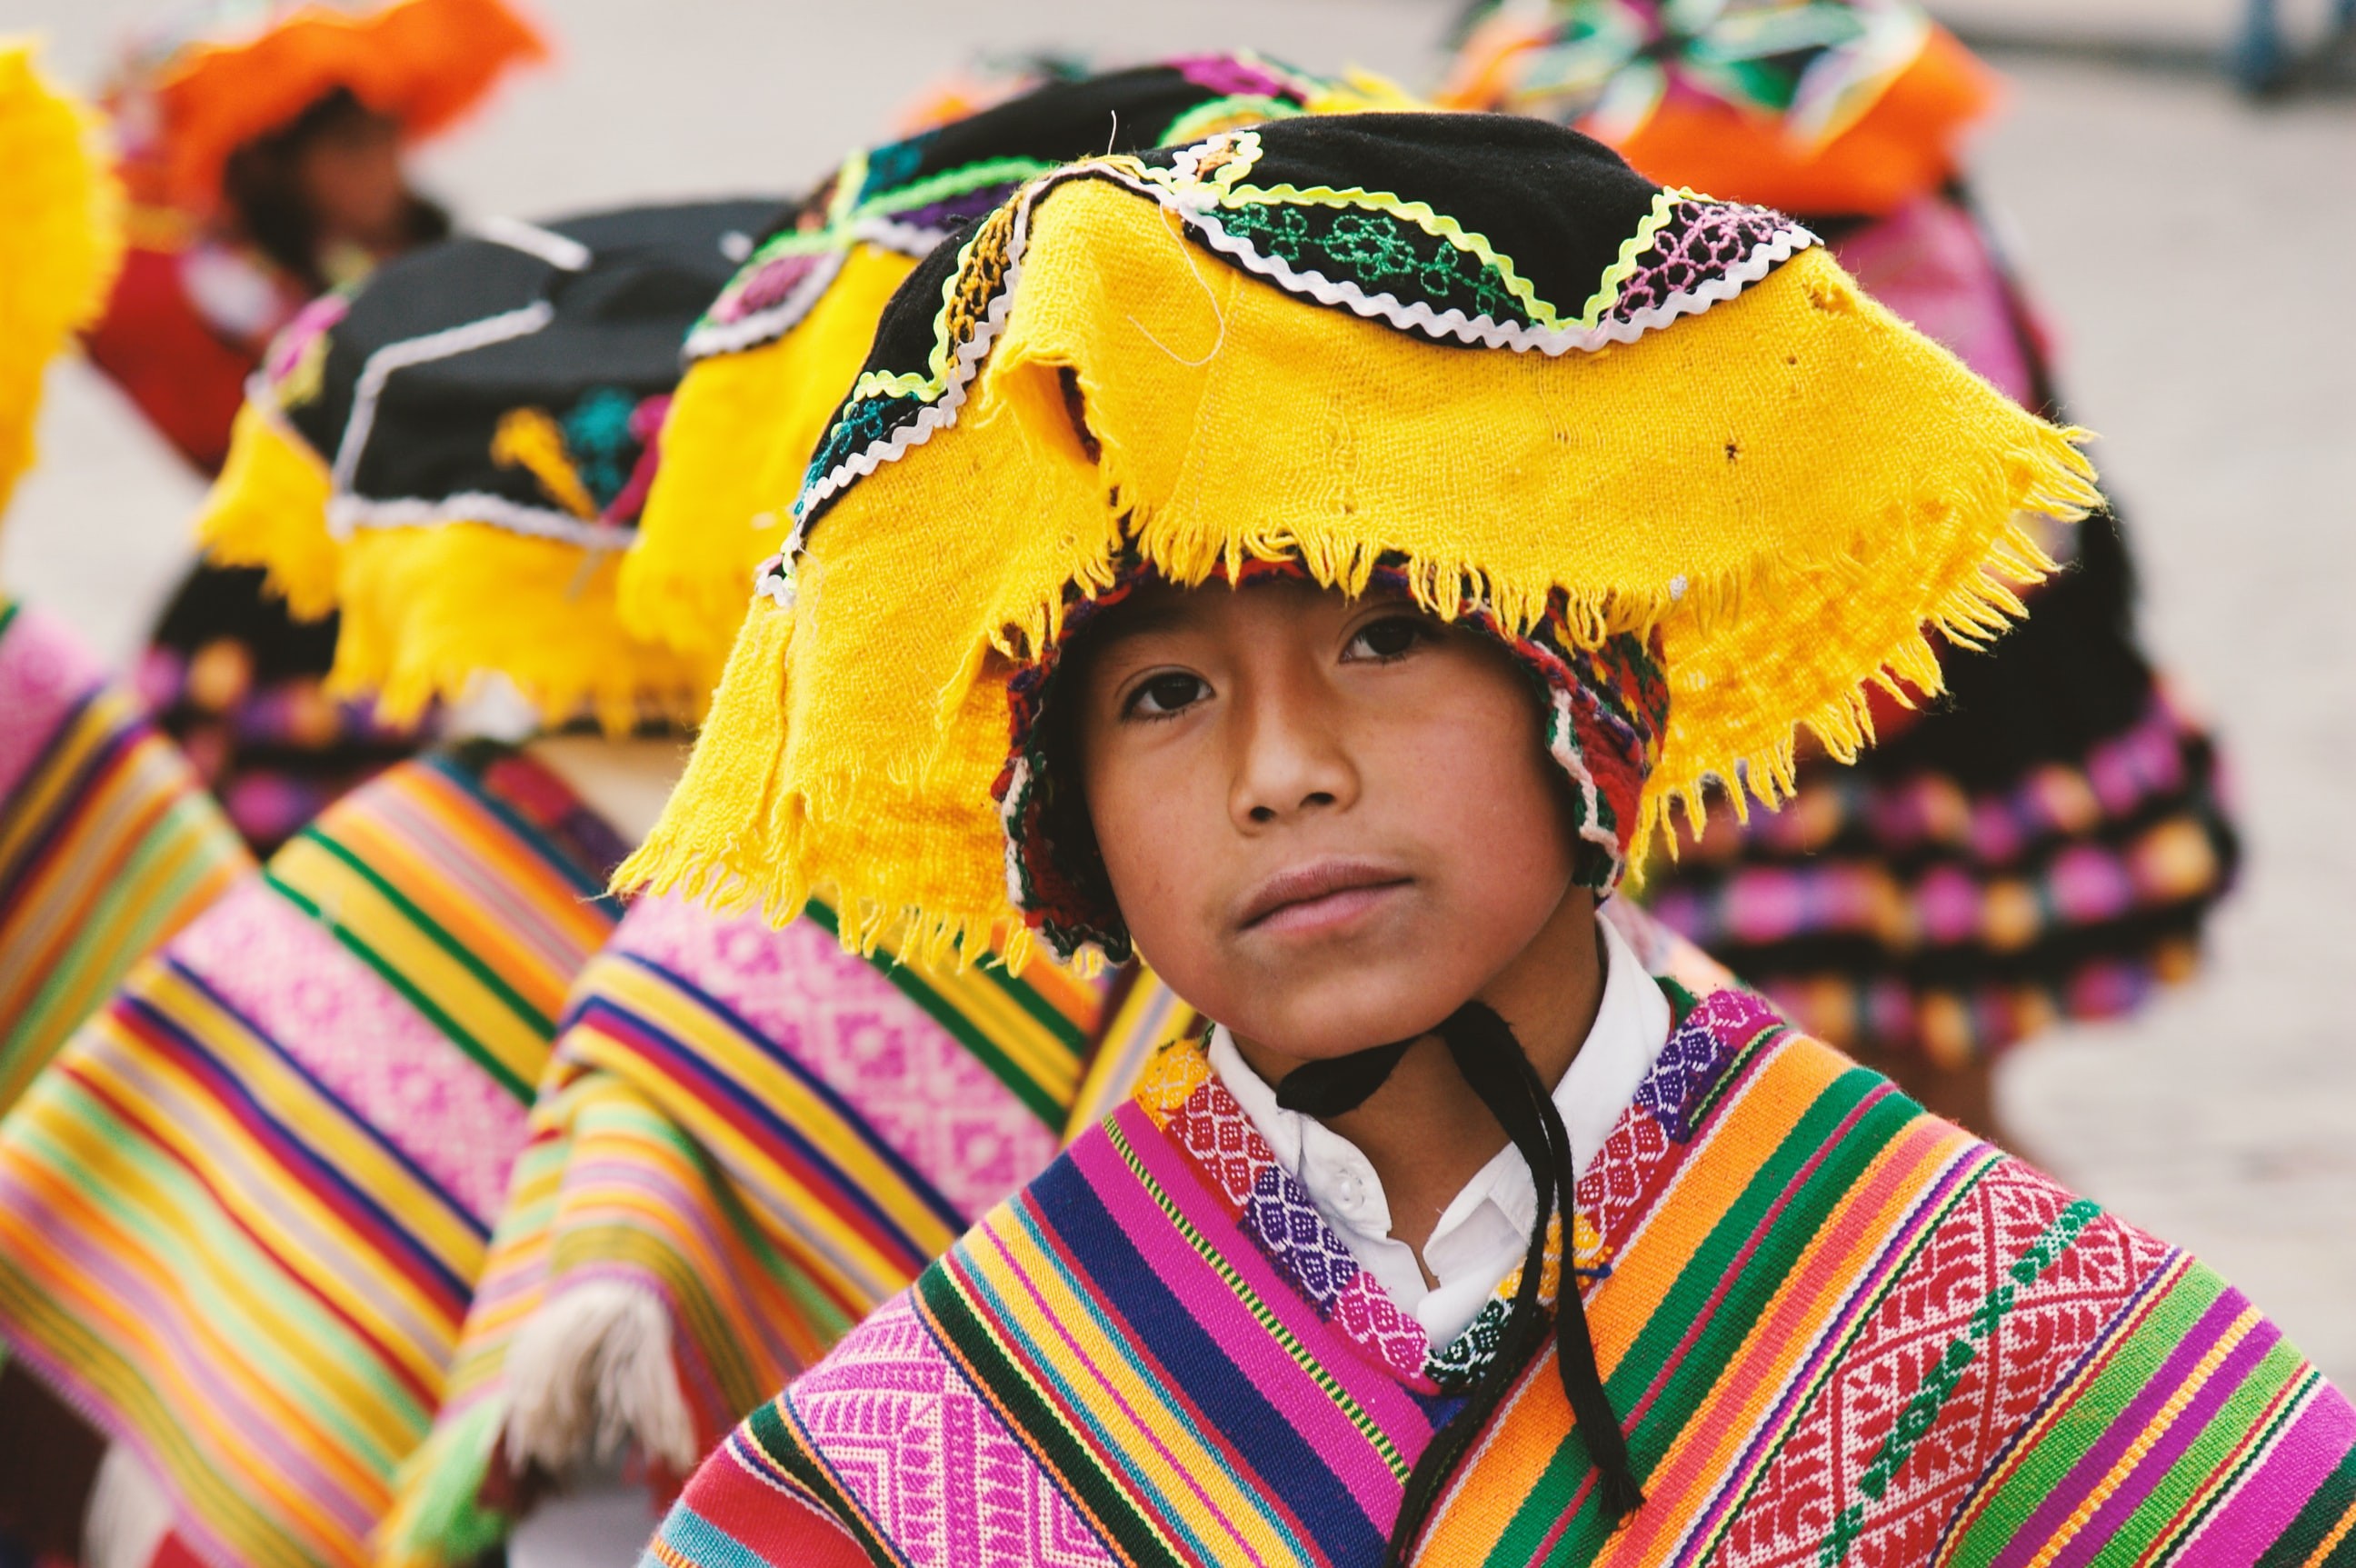 Descendentes de nativos americanos do Peru possuem variante genética ligada à baixa estatura (Foto: Ben Ostrower/Unsplash)